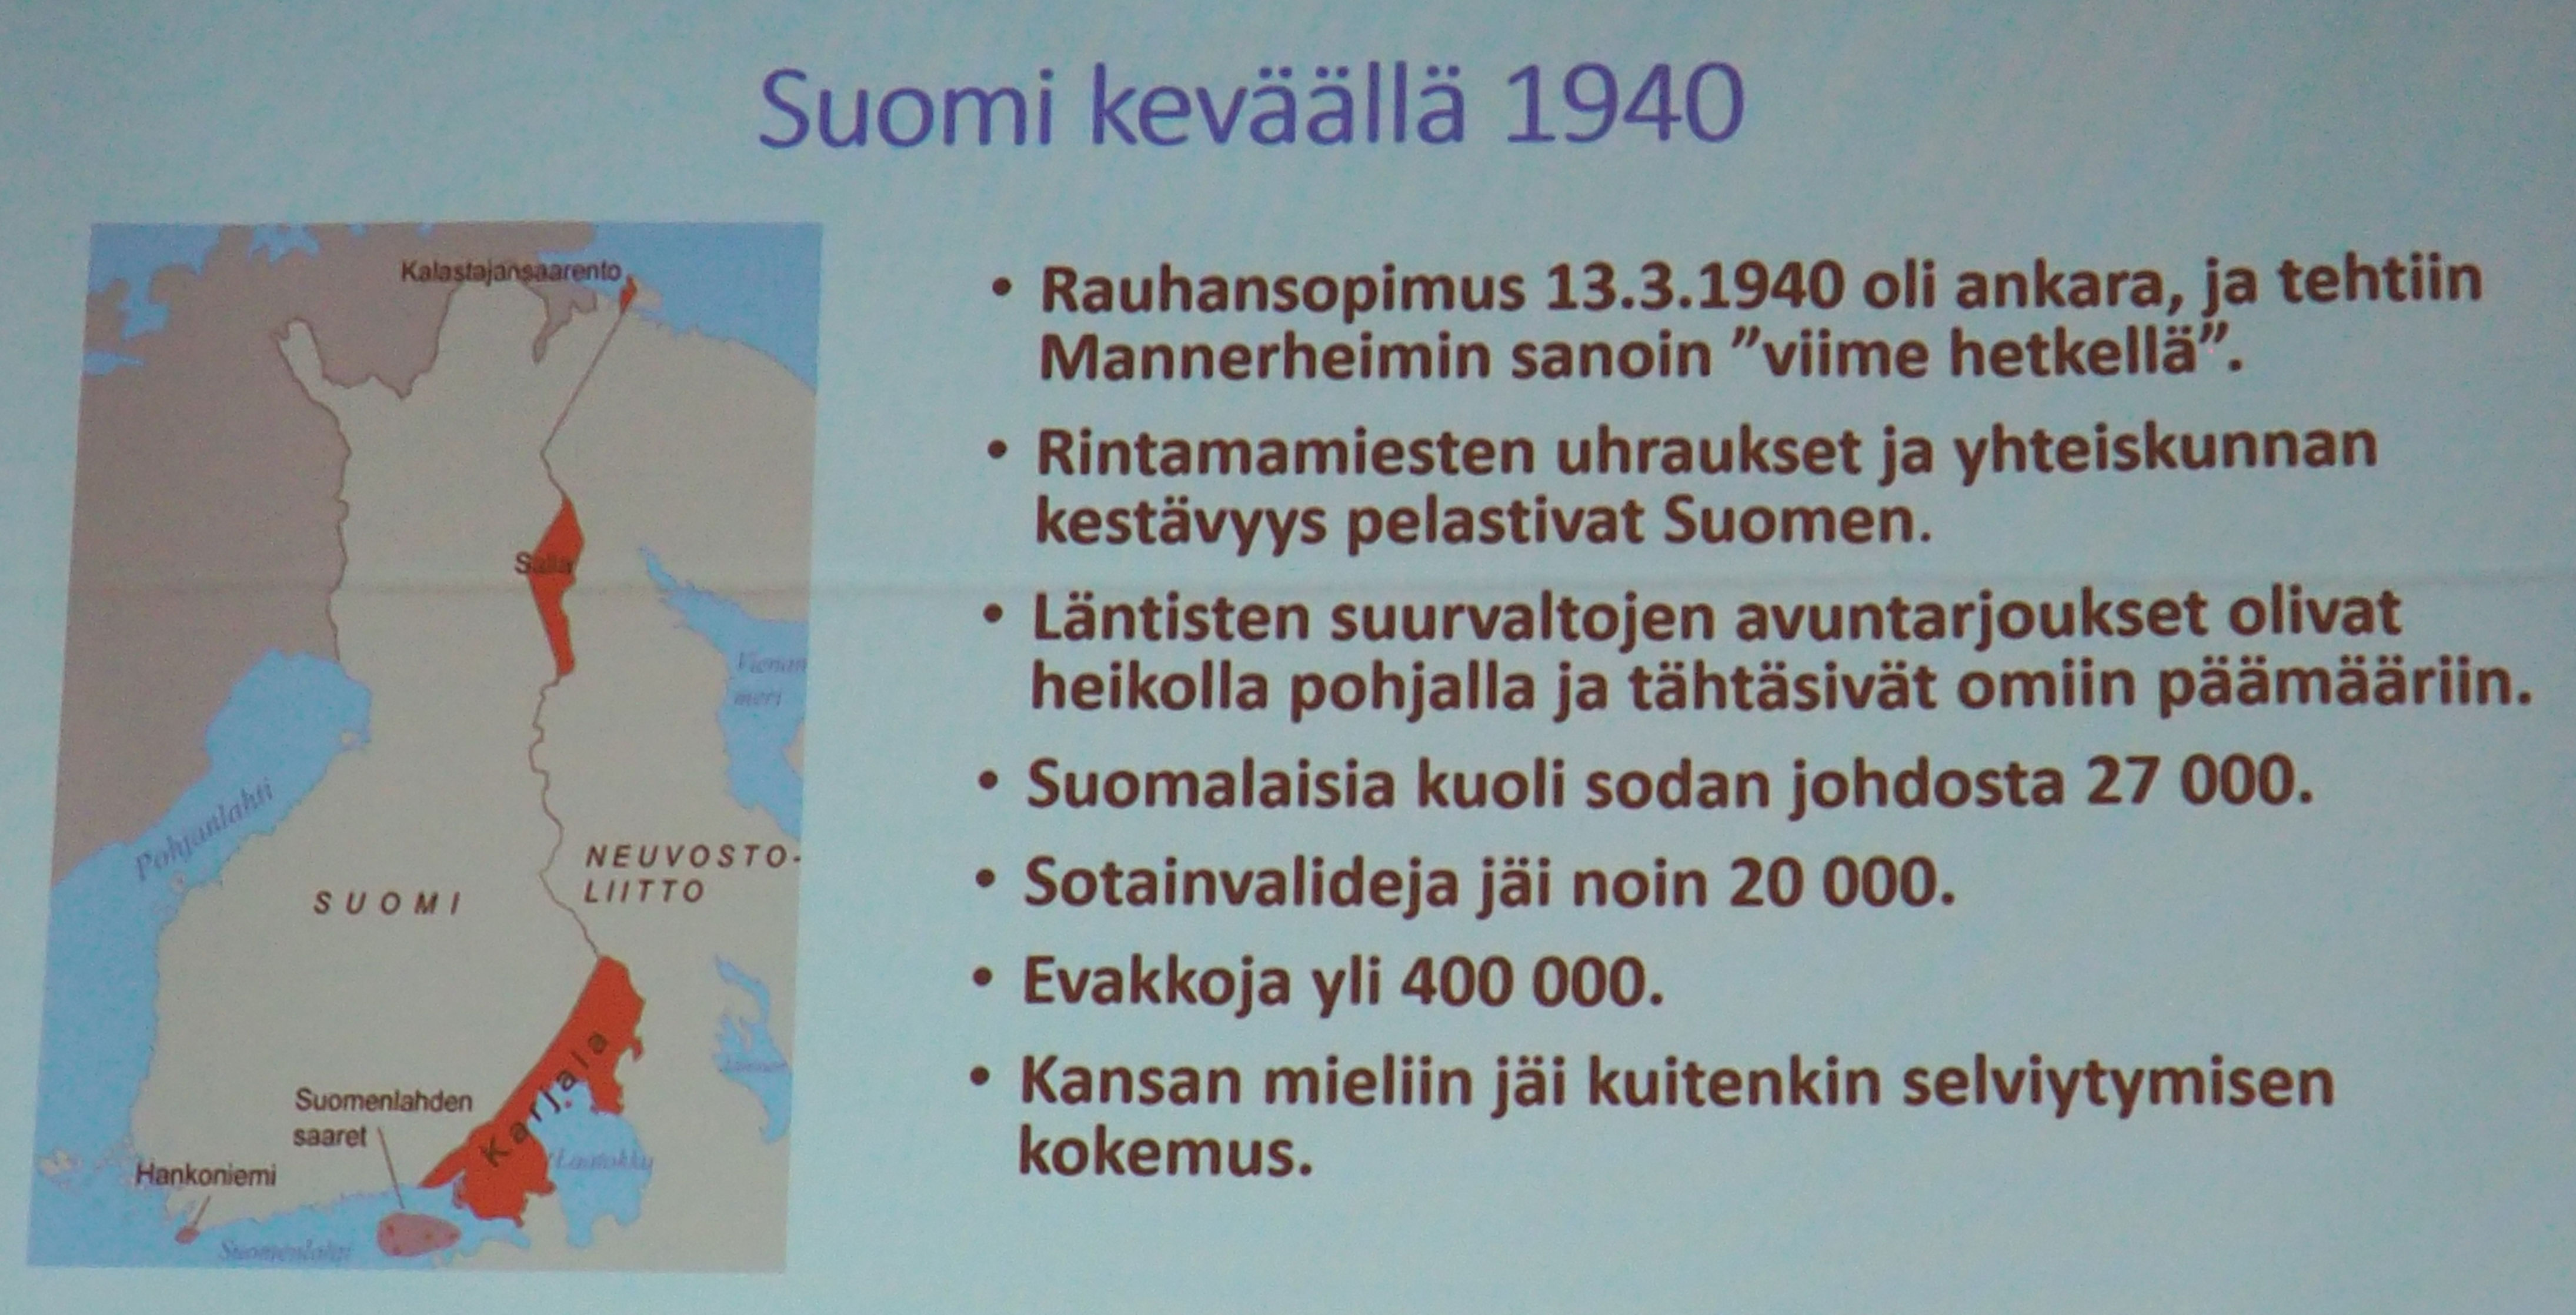 Suomi keväällä 1940